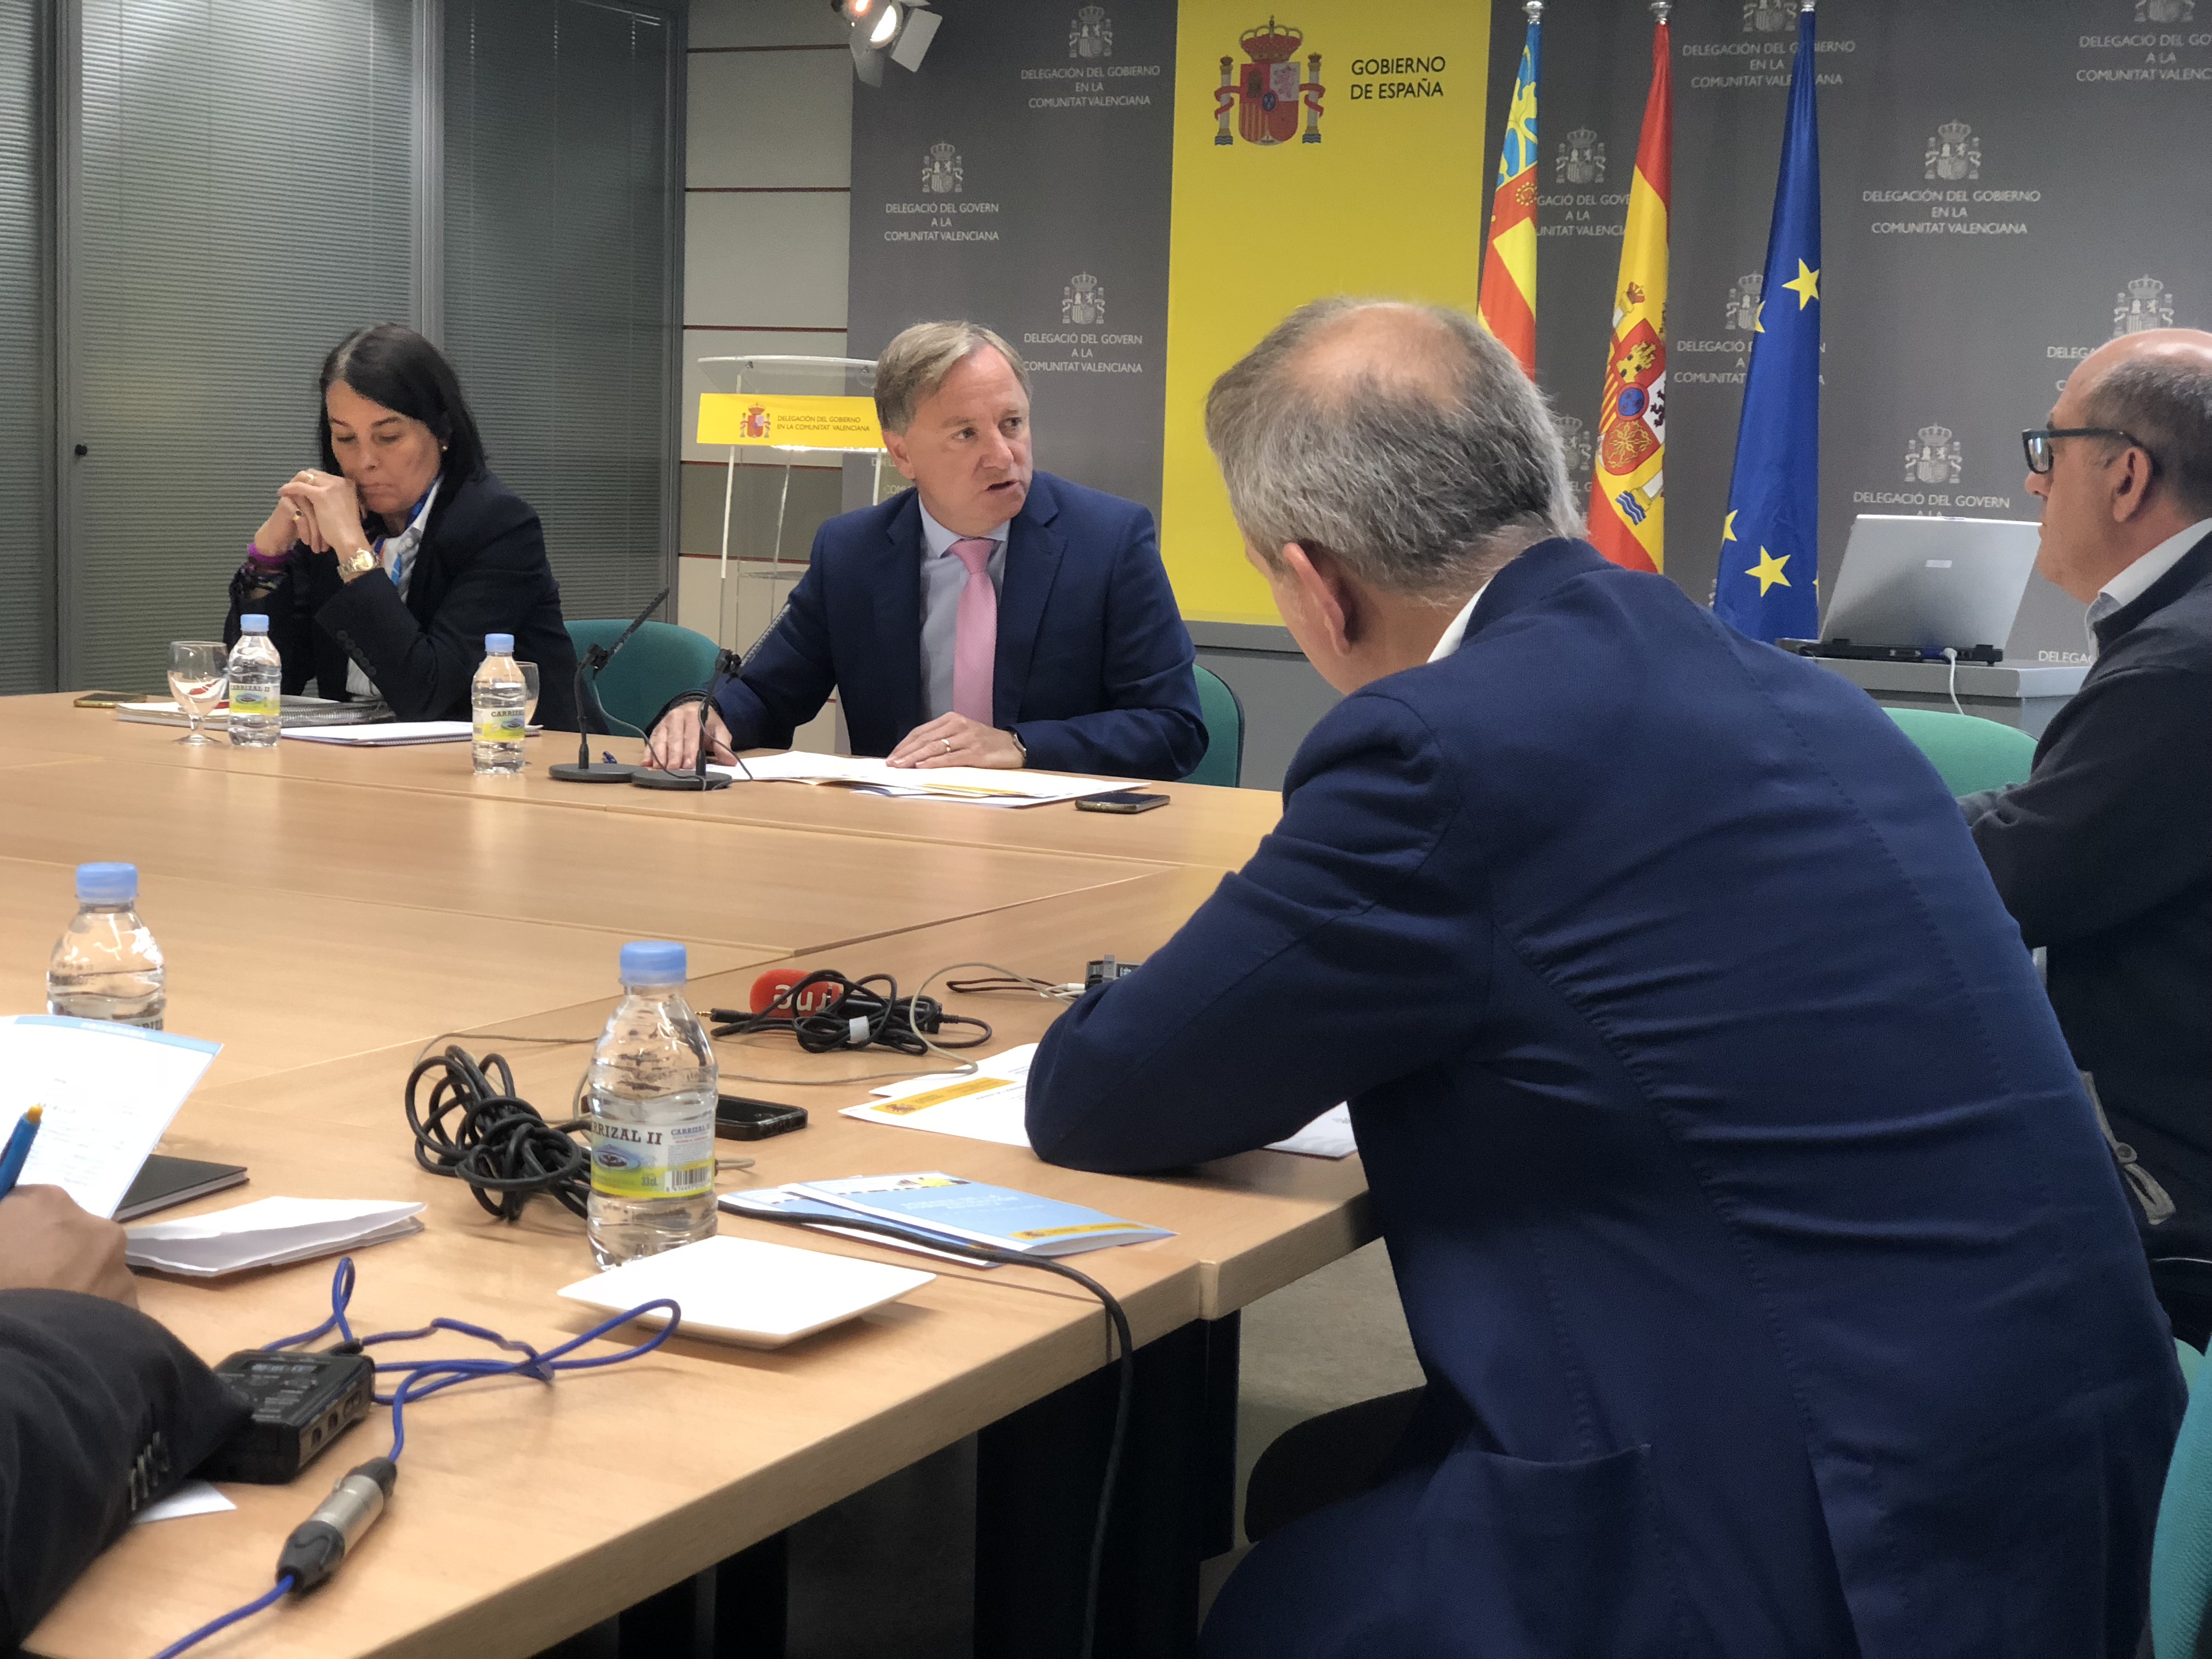 Delegación de Gobierno abre a los valencianos departamentos de la Administración General del Estado para acercarla y aproximarla al ciudadano 